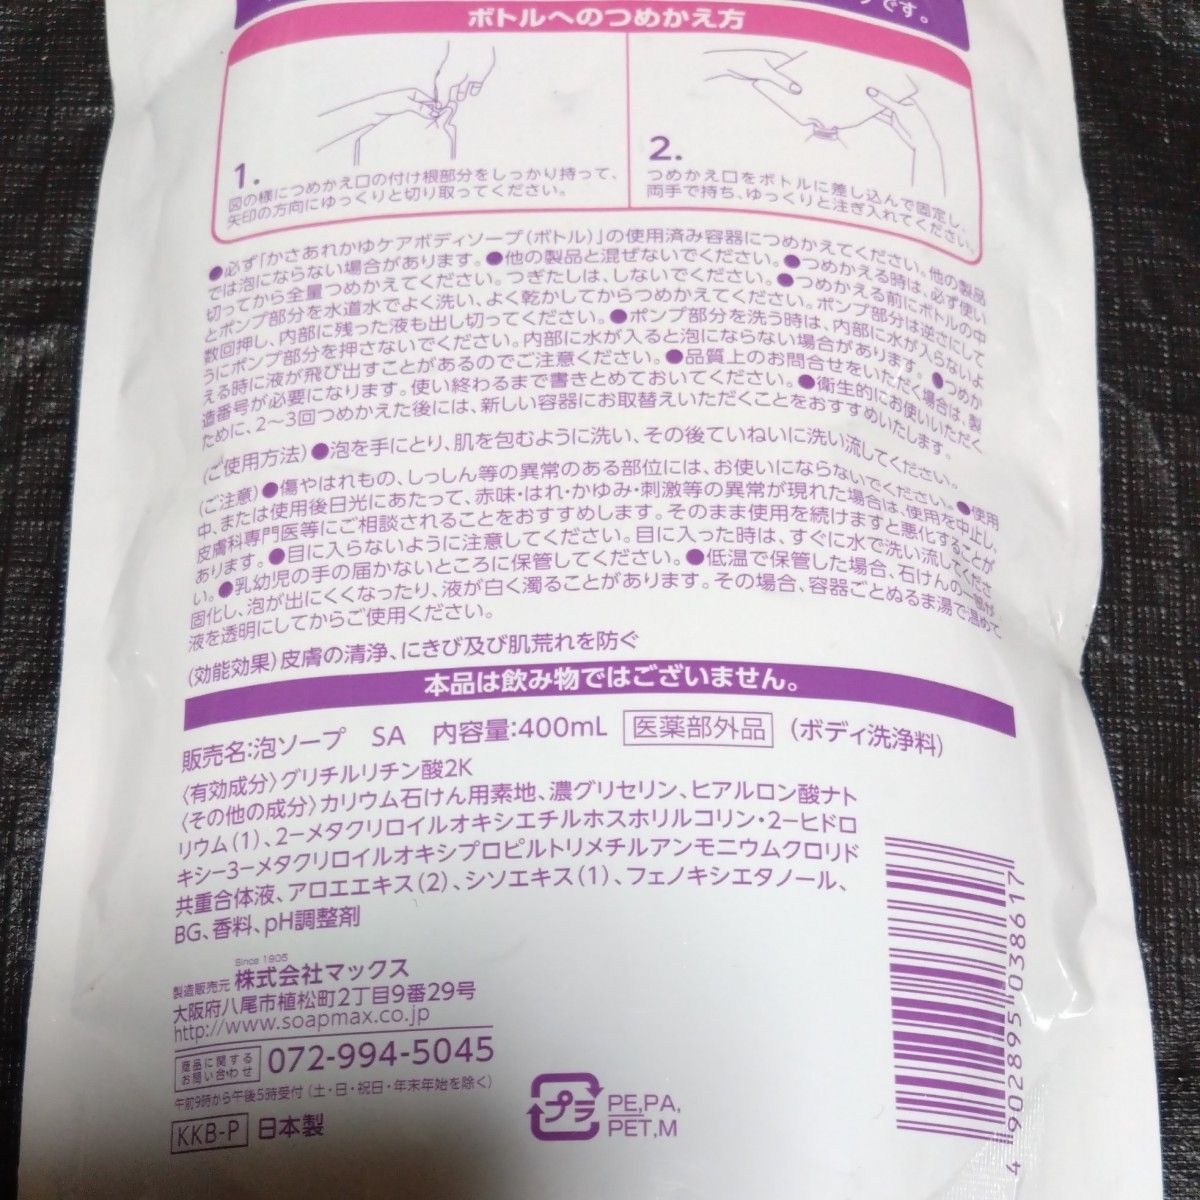 Y134 マックス 薬用 かさあれかゆケア 肌にやさしい泡のボディソープ つめかえ用 400mL 日本製 潤ってしっとり医薬部外品